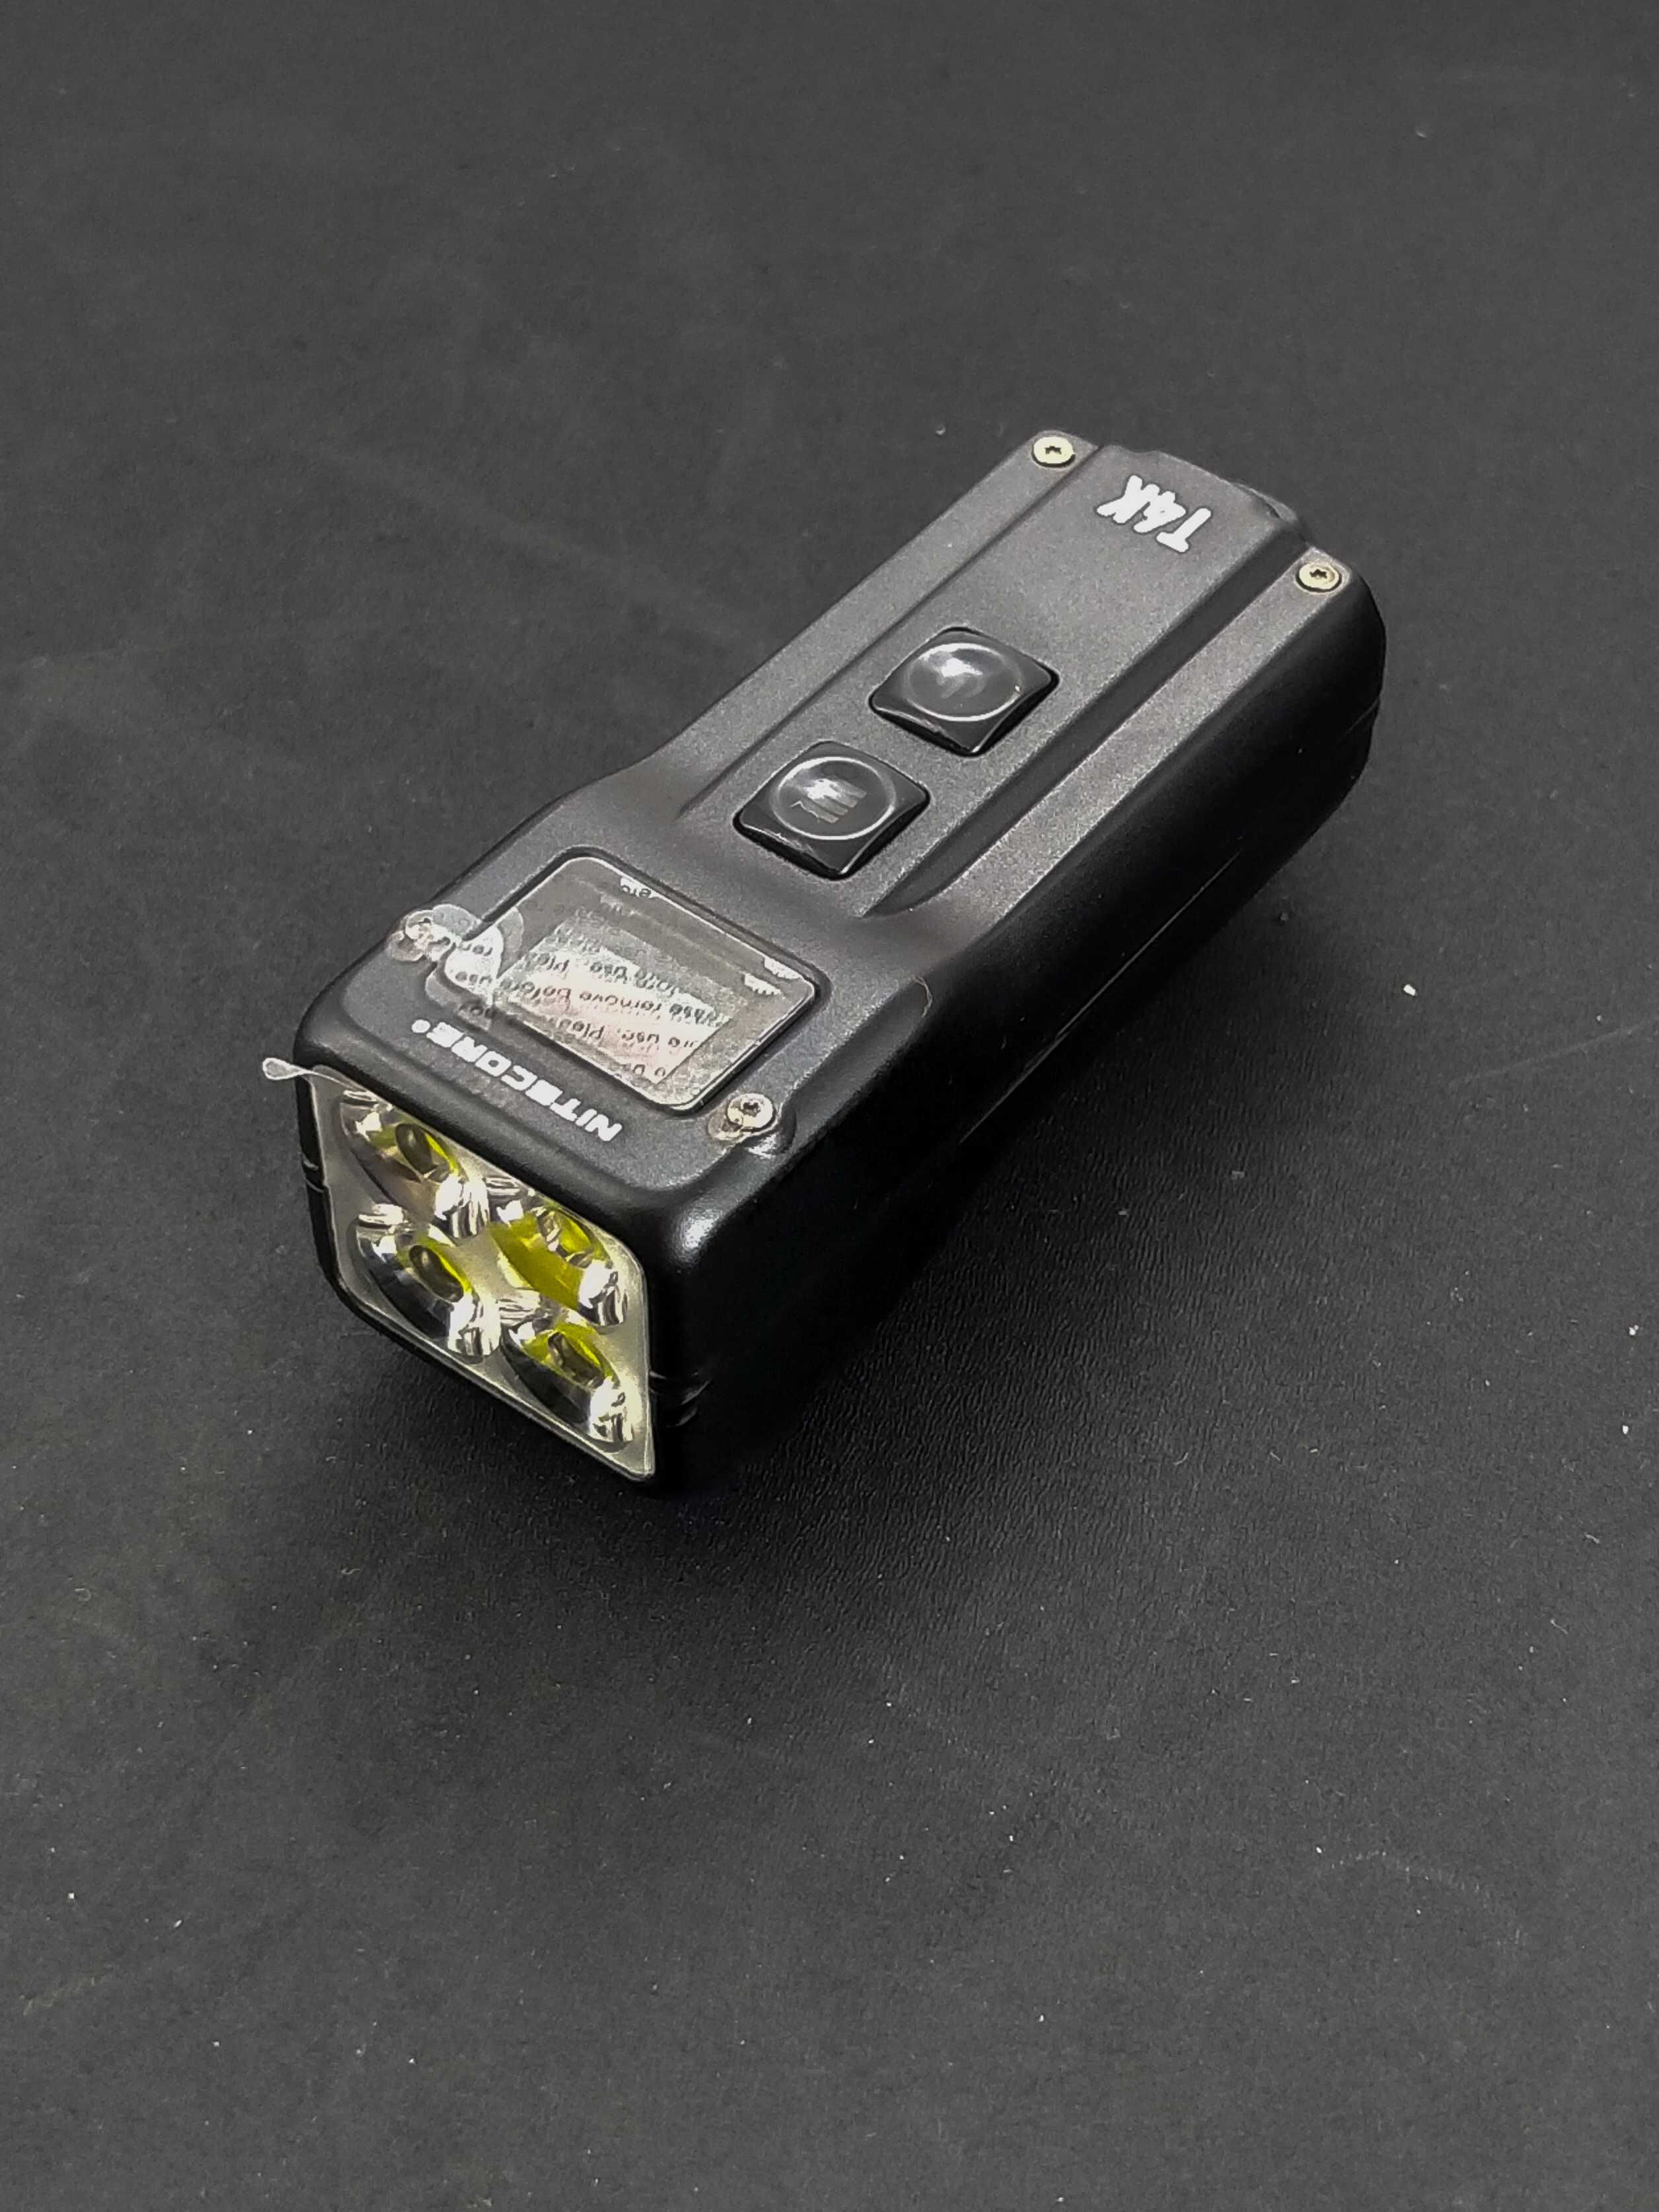 Надпотужний наключний, EDC Nitecore T4K з OLED дисплеєм (USB Type-C)